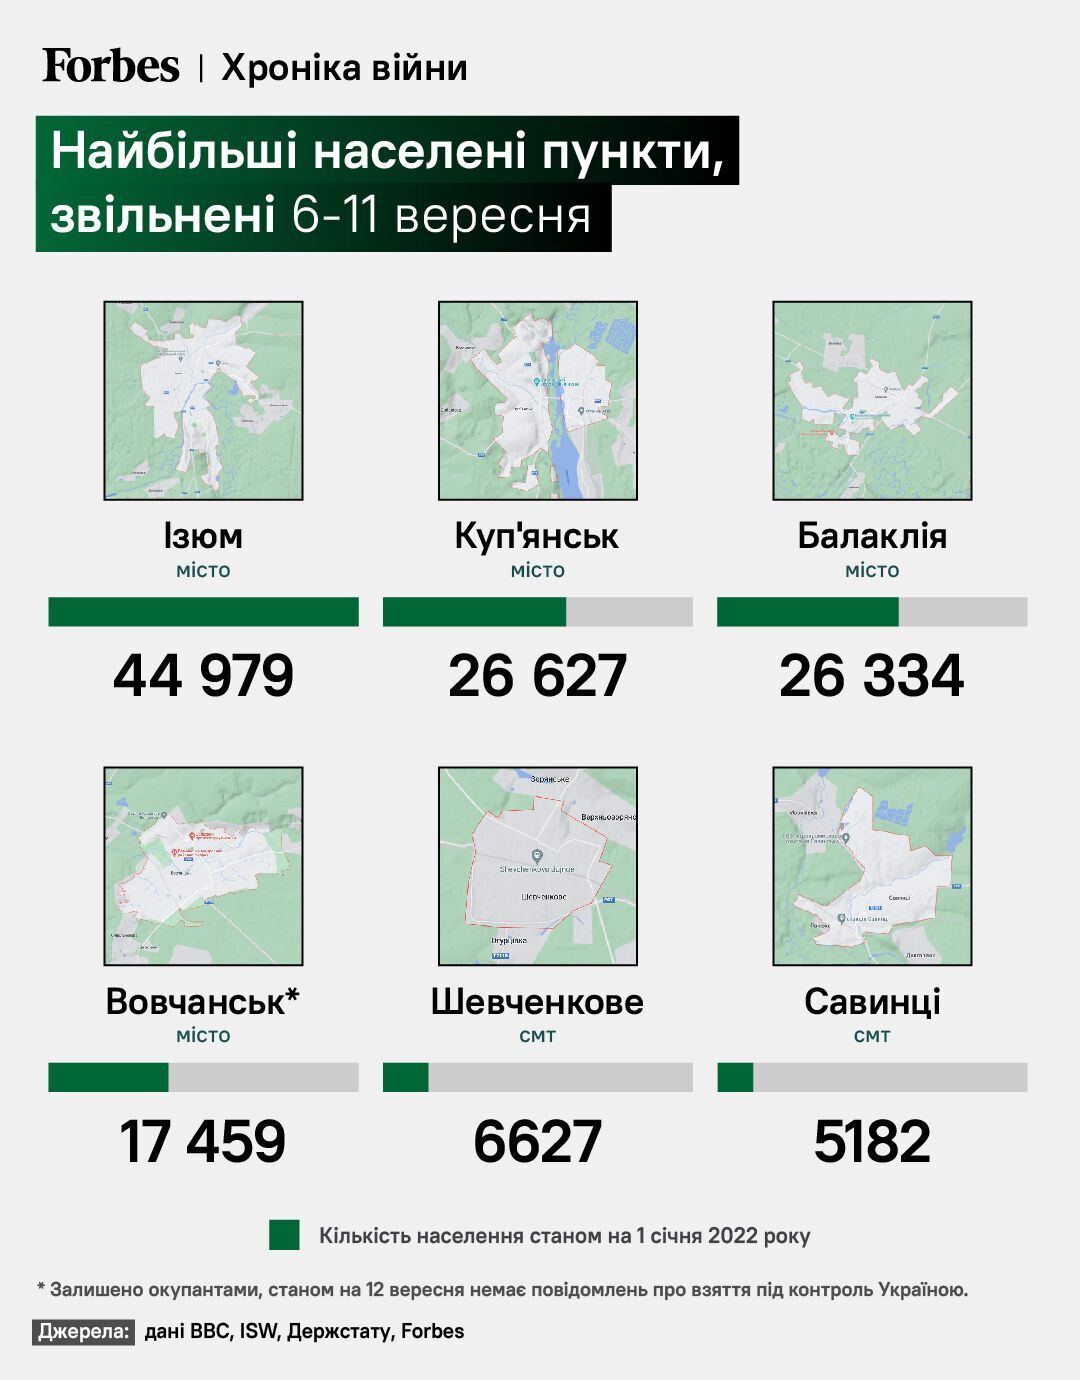 Количество населения крупнейших освобожденных украинских городов